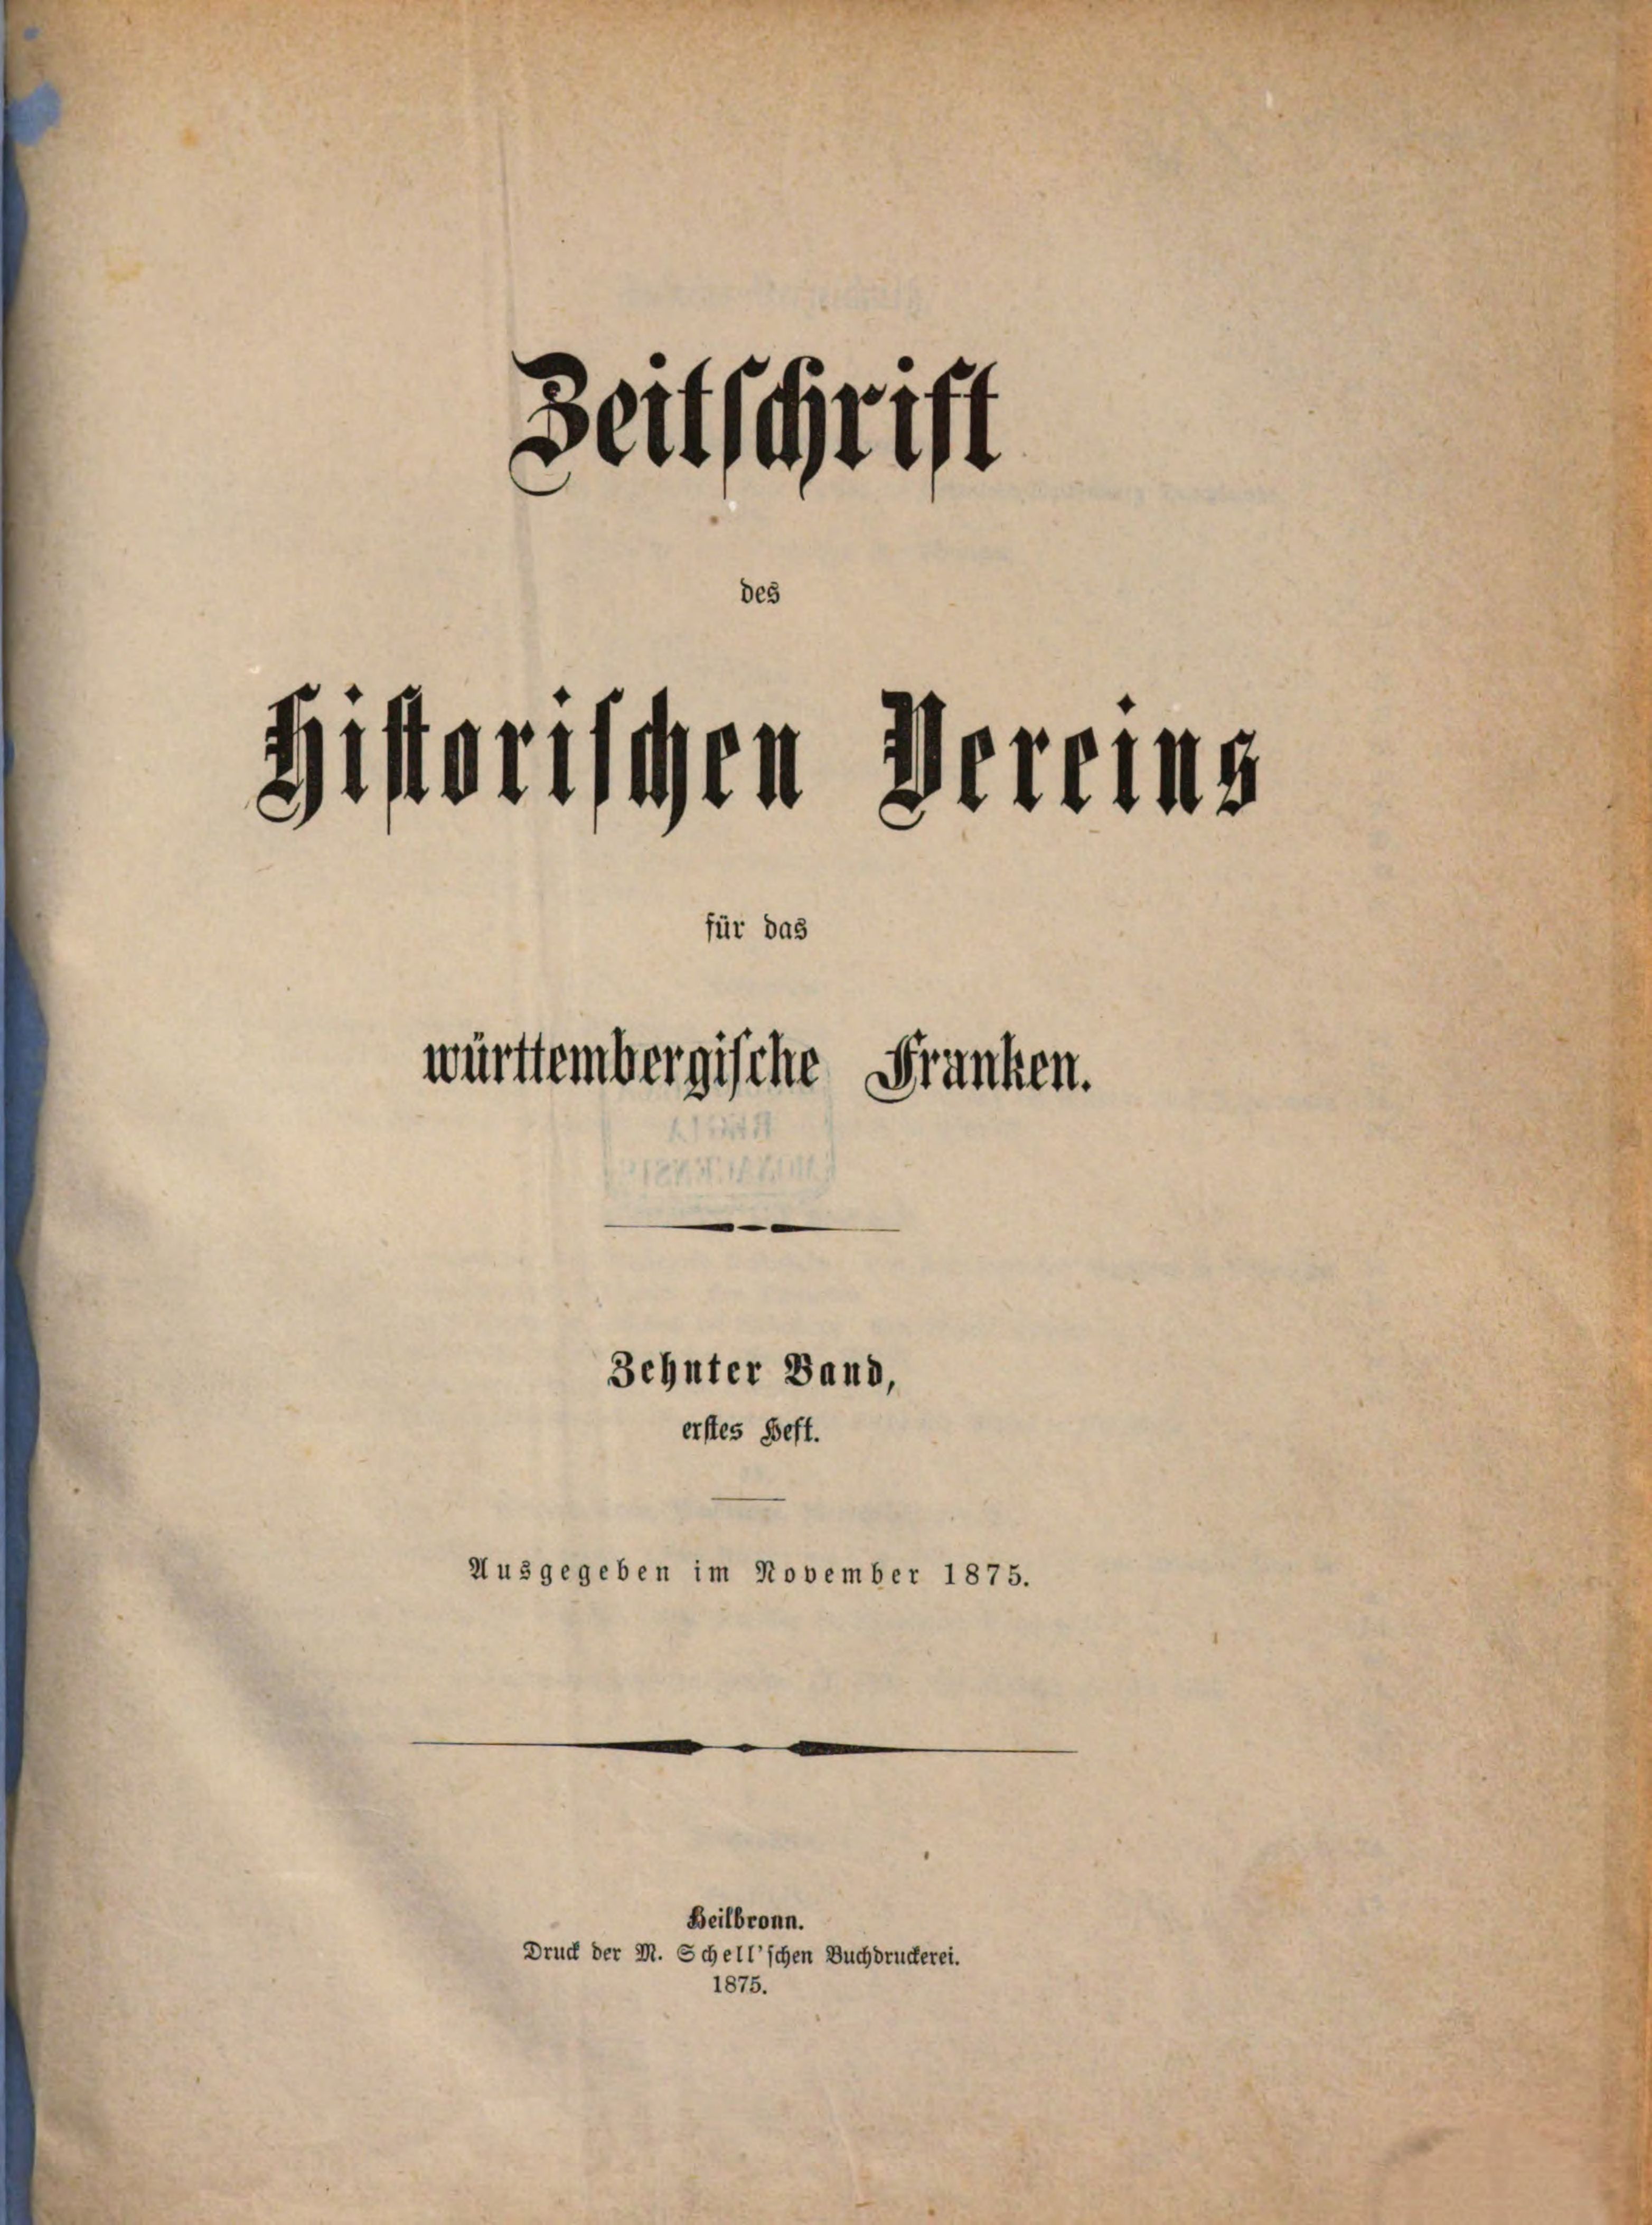 Titelbild der Zeitschrift des Historischen Vereins für das Württembergische Franken, Band 10, Nummer 1, 1875